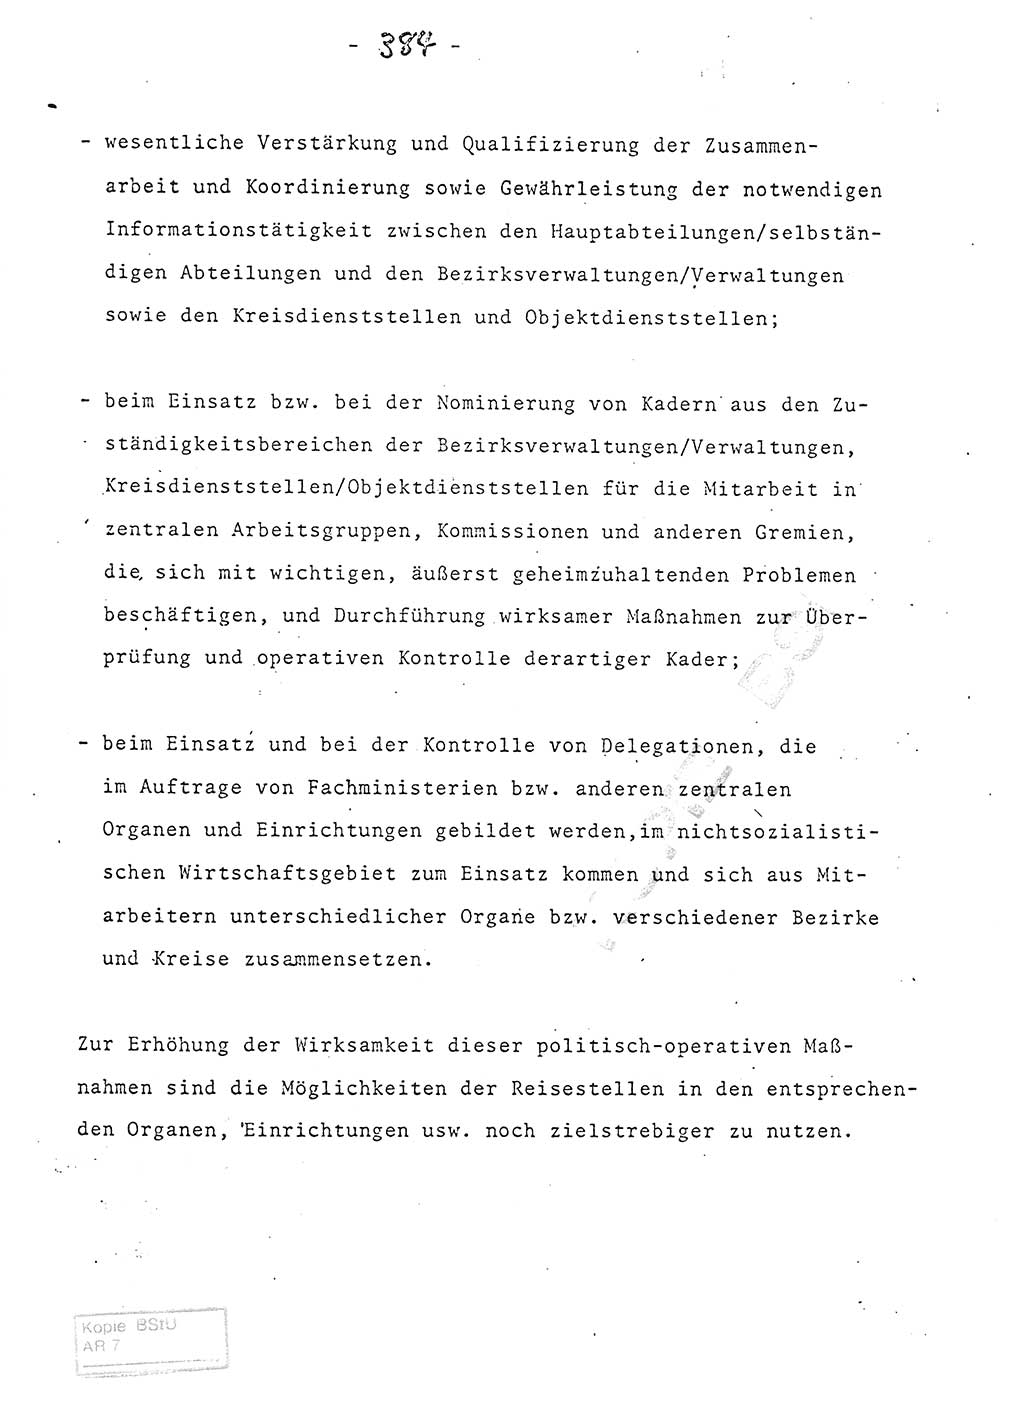 Referat (Entwurf) des Genossen Minister (Generaloberst Erich Mielke) auf der Dienstkonferenz 1972, Ministerium für Staatssicherheit (MfS) [Deutsche Demokratische Republik (DDR)], Der Minister, Geheime Verschlußsache (GVS) 008-150/72, Berlin 25.2.1972, Seite 384 (Ref. Entw. DK MfS DDR Min. GVS 008-150/72 1972, S. 384)